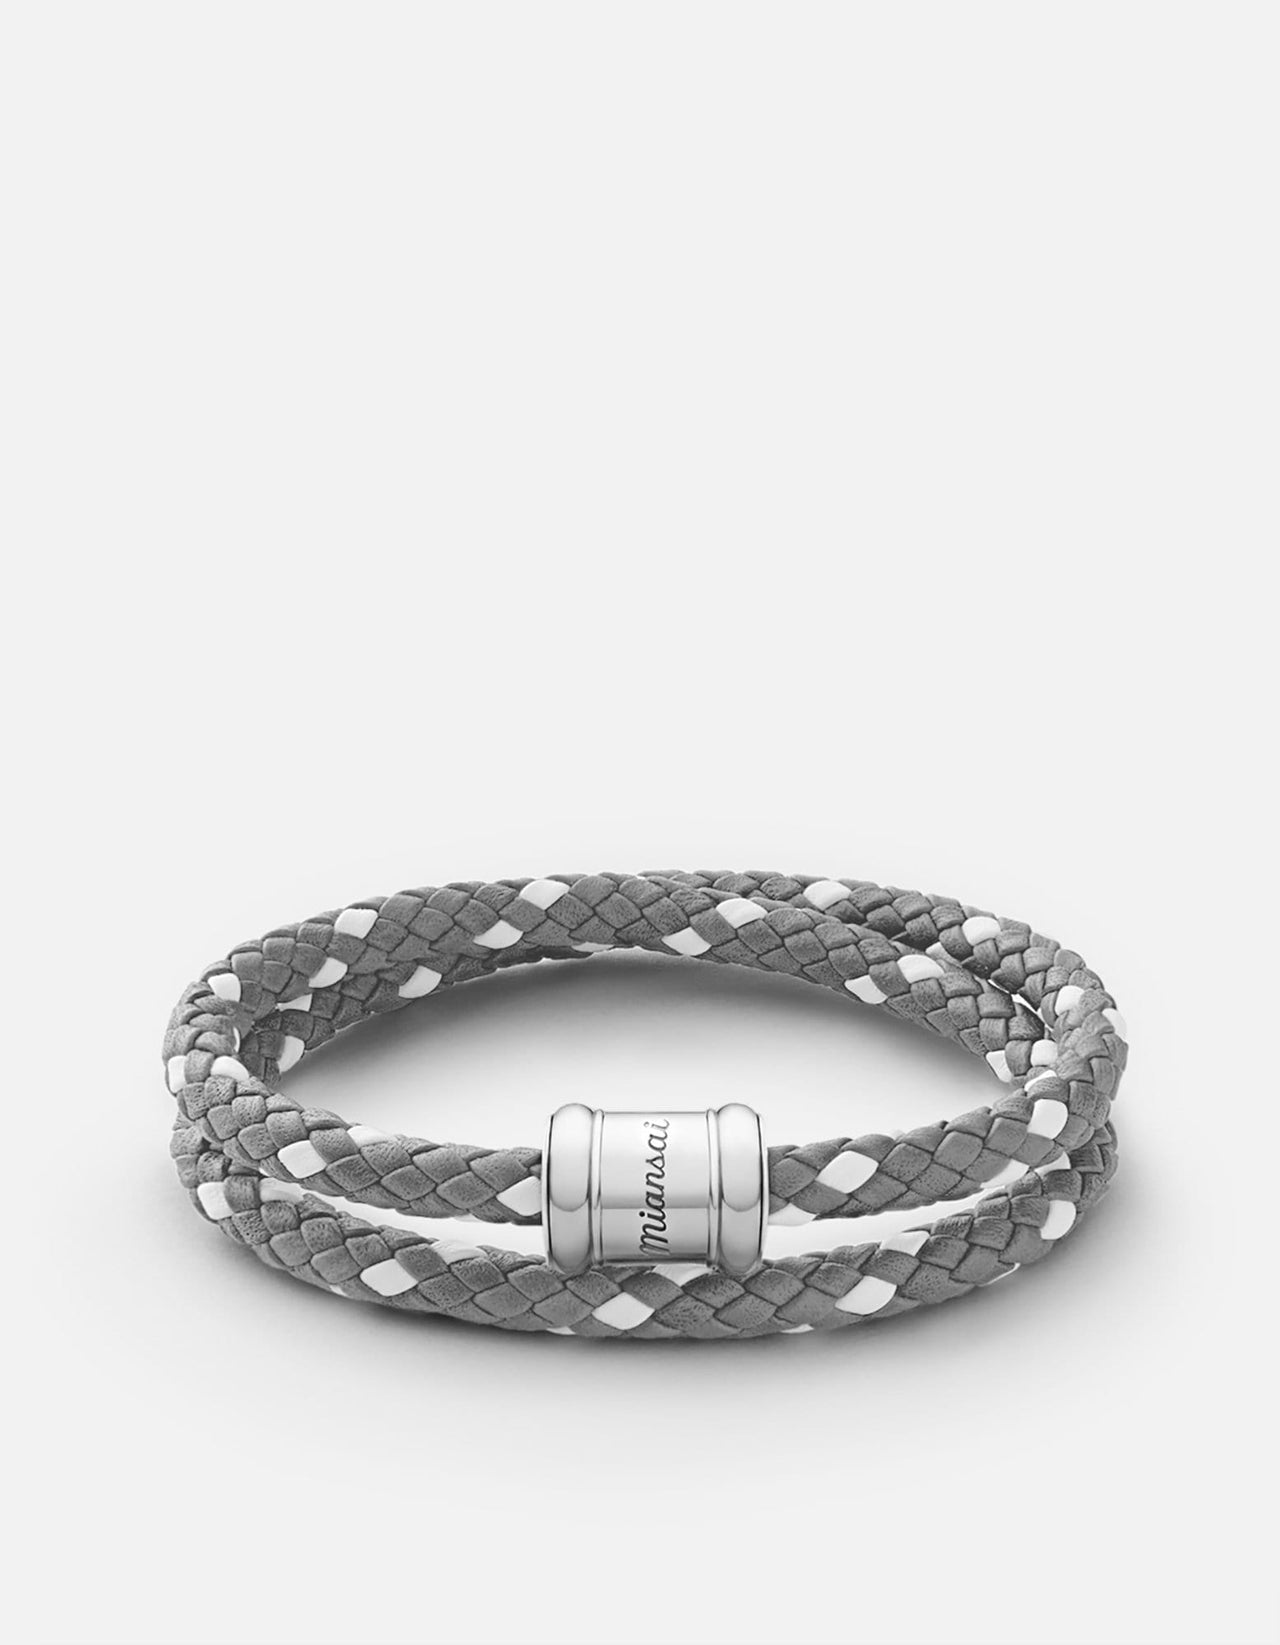 Men's Jewelry | Cufflinks, Bracelets & Gifts | S.Vaggi Store – Gioielleria  S.Vaggi